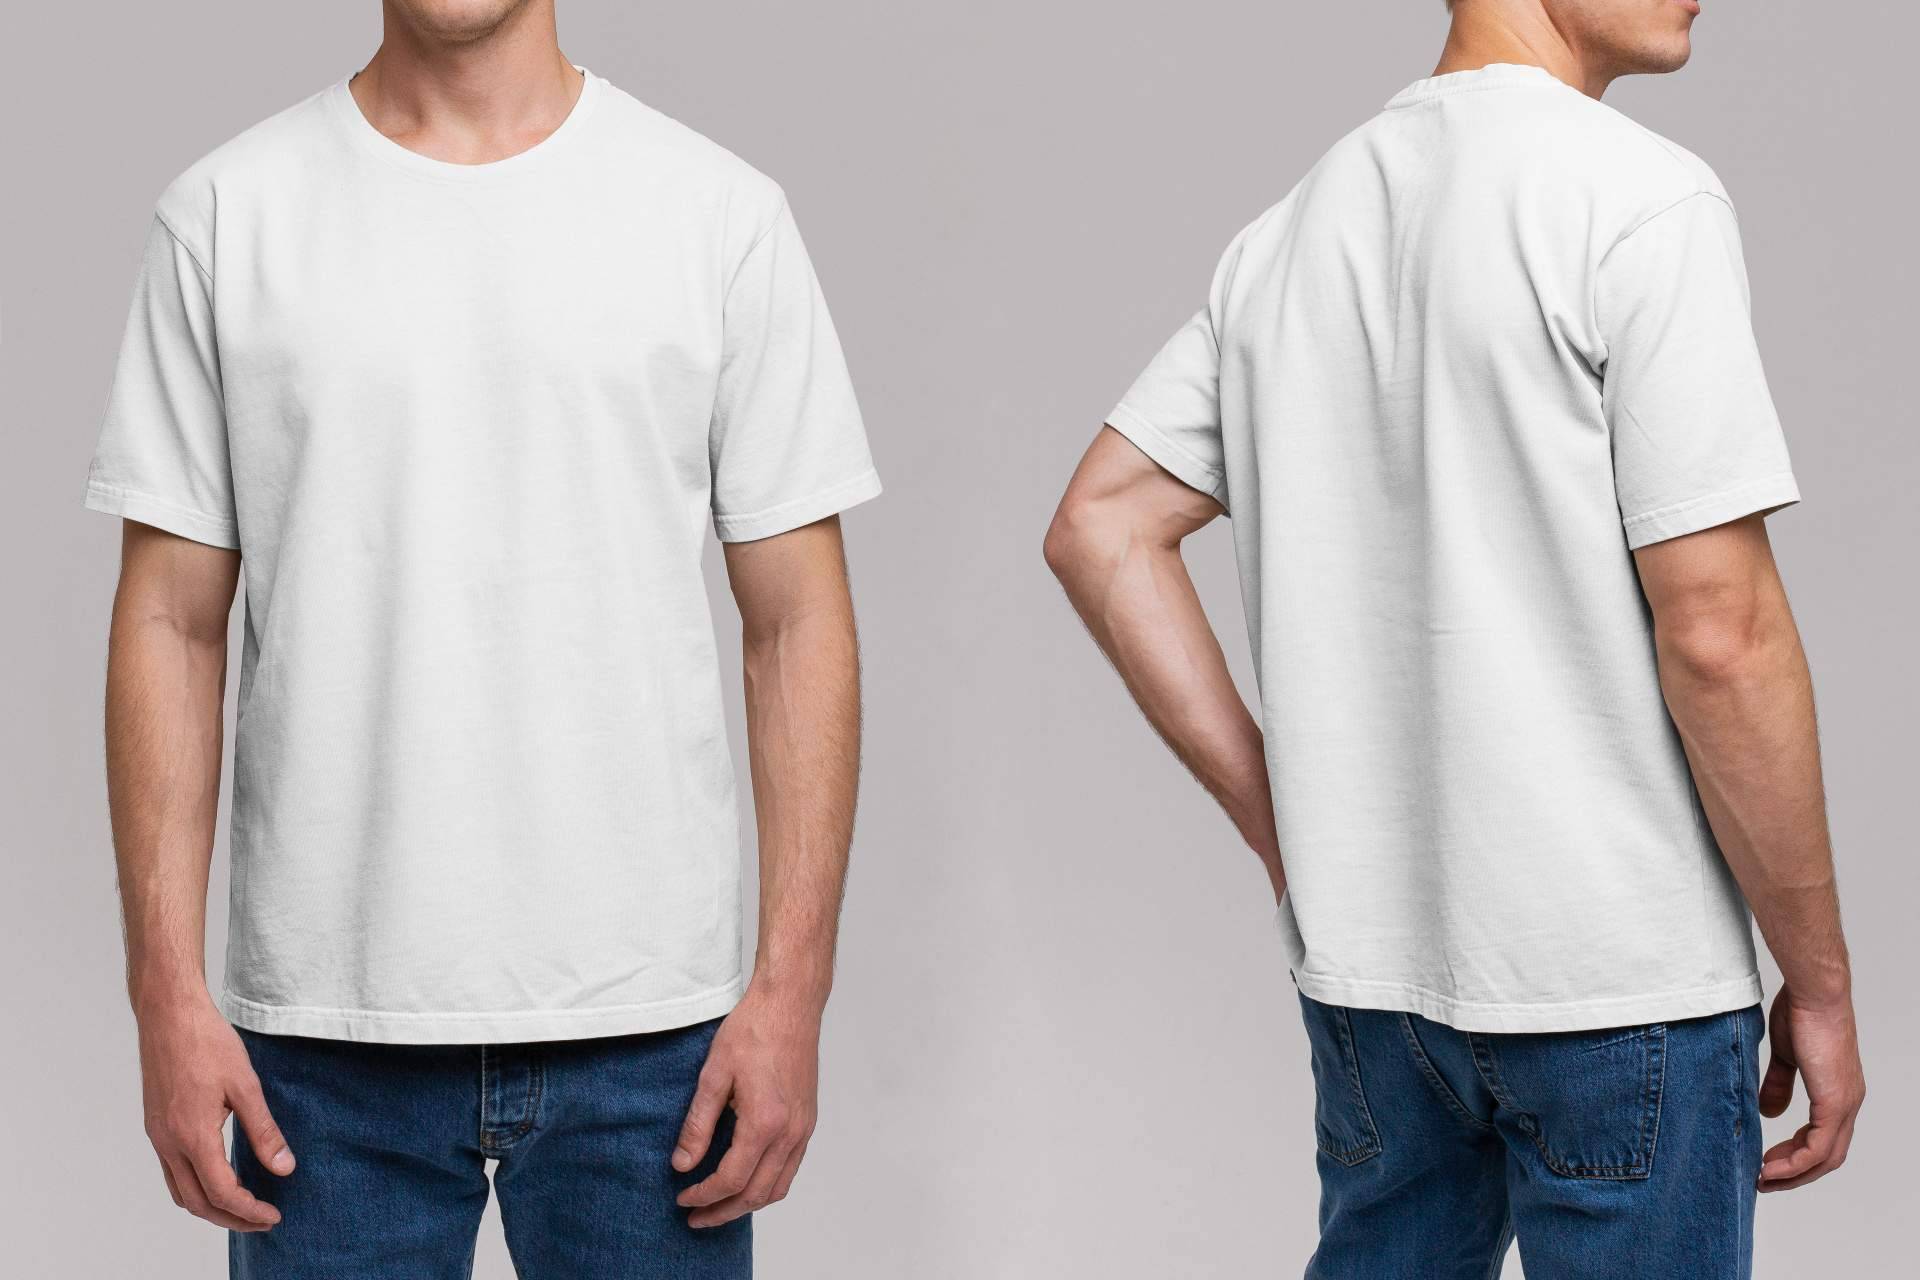 Las camisetas publicitarias de RegaloEmpresas son una excelente opción para impactar con ingenio y calidad